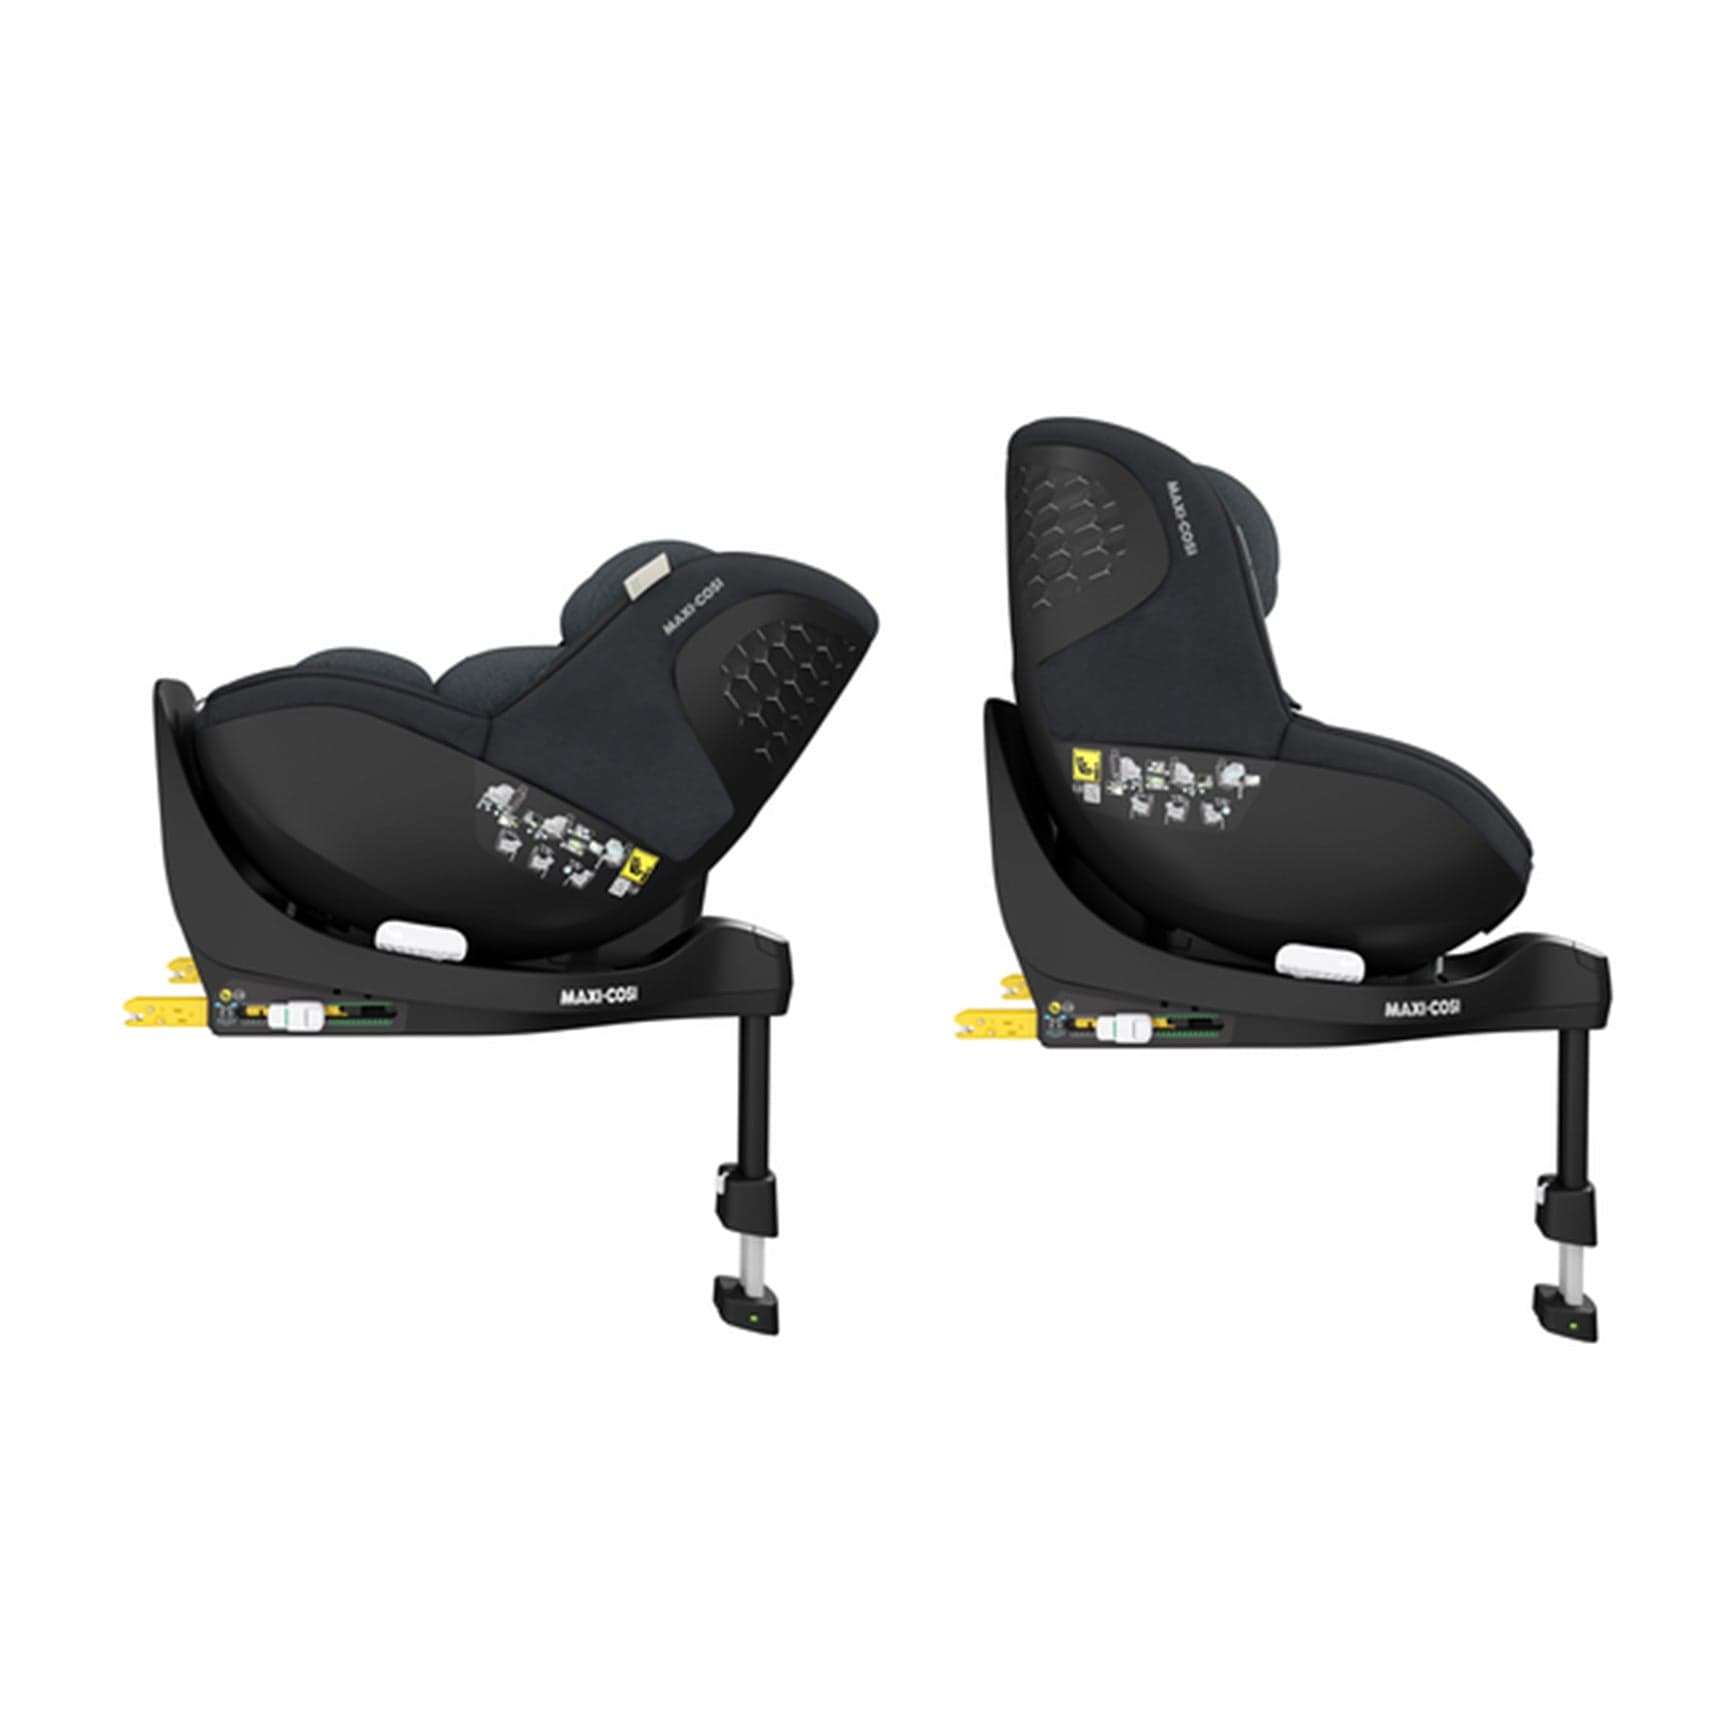 Maxi-Cosi baby car seats Maxi-Cosi Mica Pro Eco i-Size in Authentic Graphite 8515550110